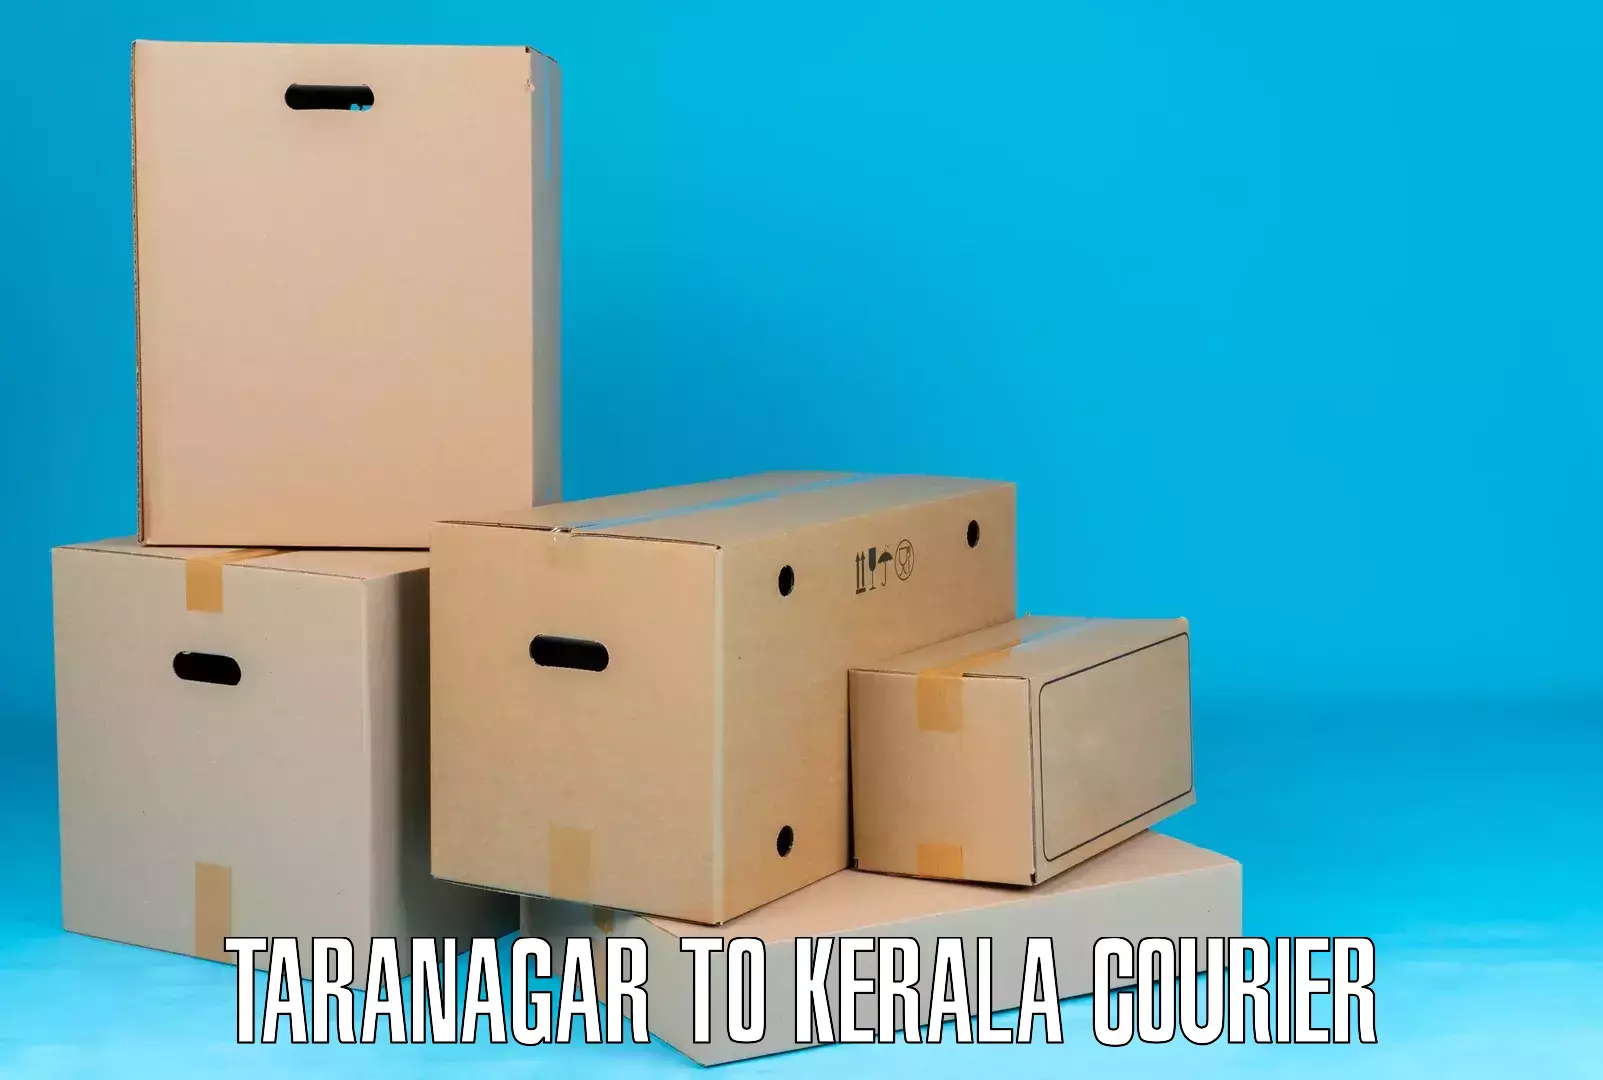 Air courier services Taranagar to Mahe